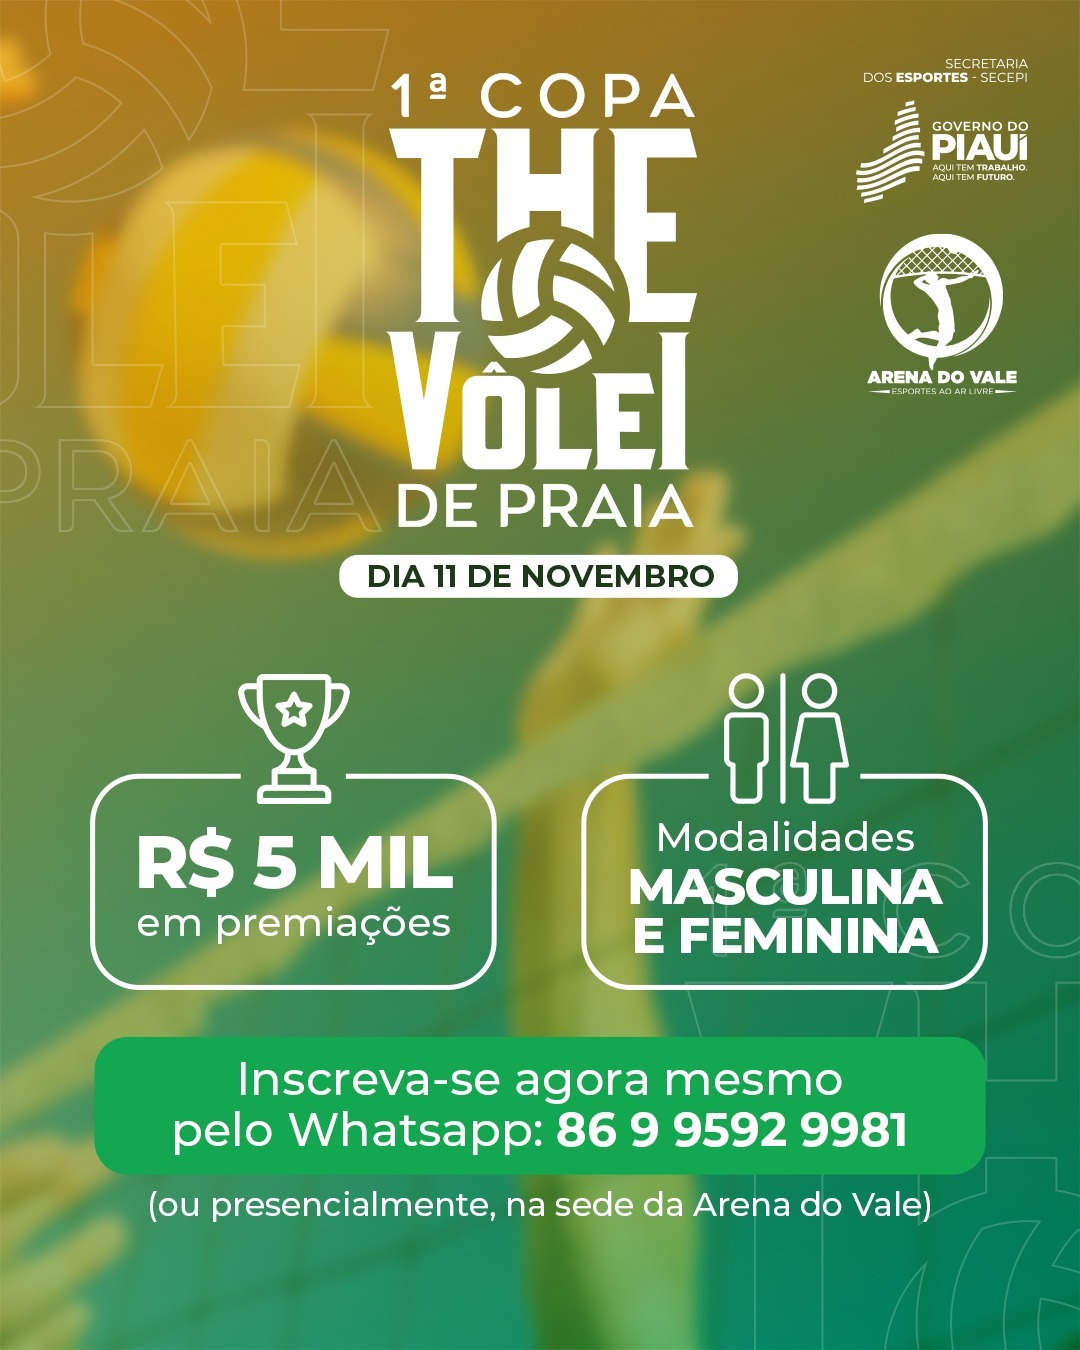 Jogos de Hoje – Brasileirão – 1ª Rodada - 180graus - O Maior Portal do Piauí